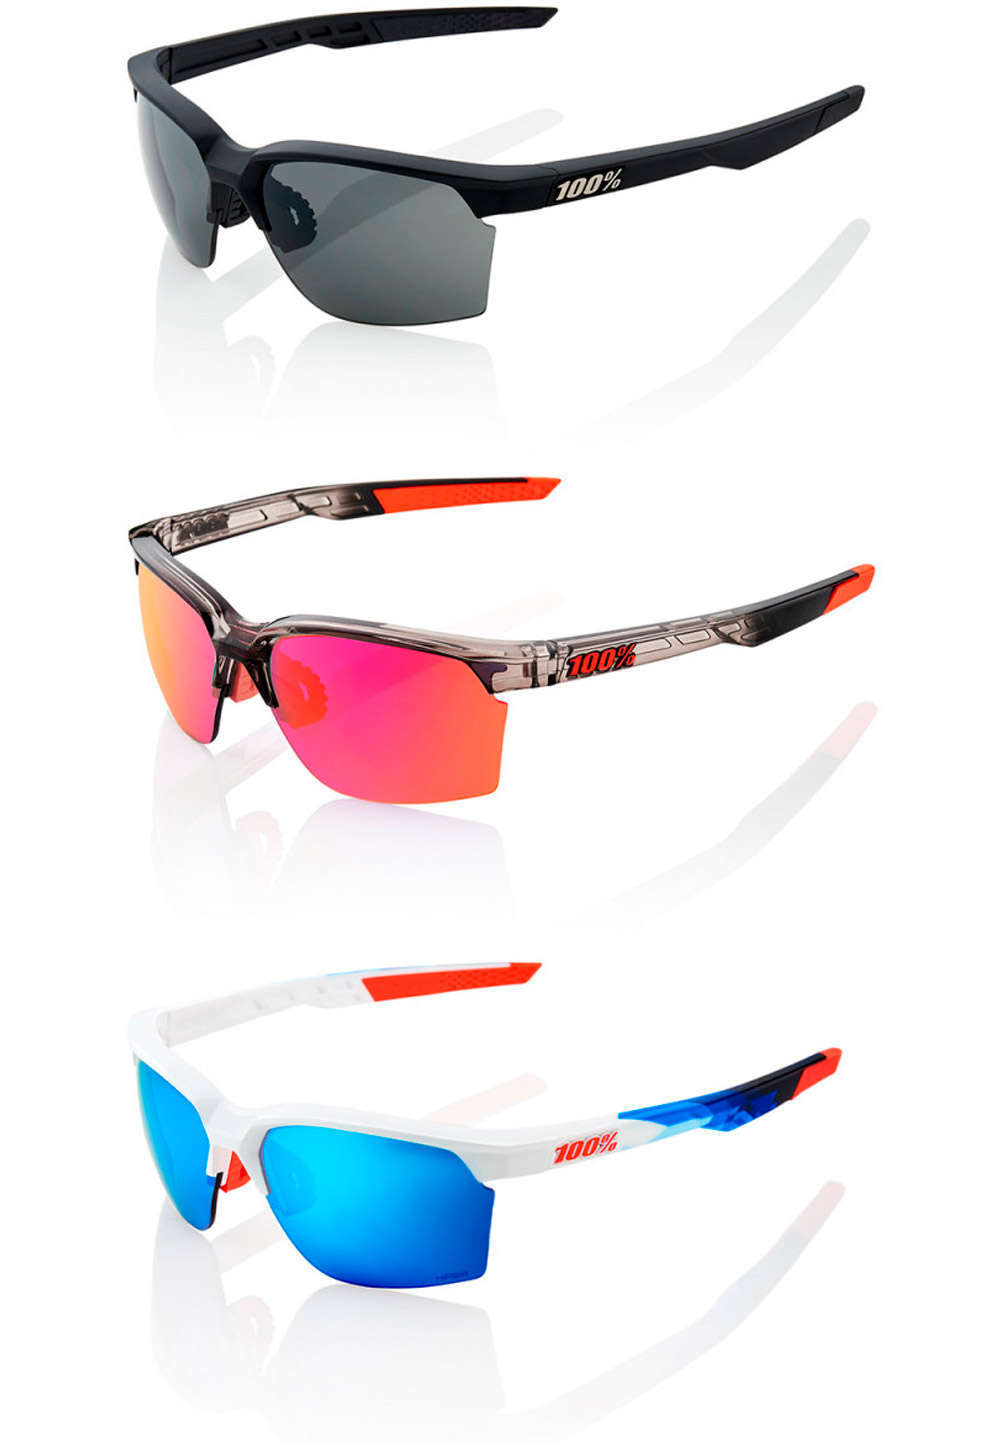 En TodoMountainBike: 100% Sportcoupe, unas gafas todoterreno para cualquier actividad deportiva